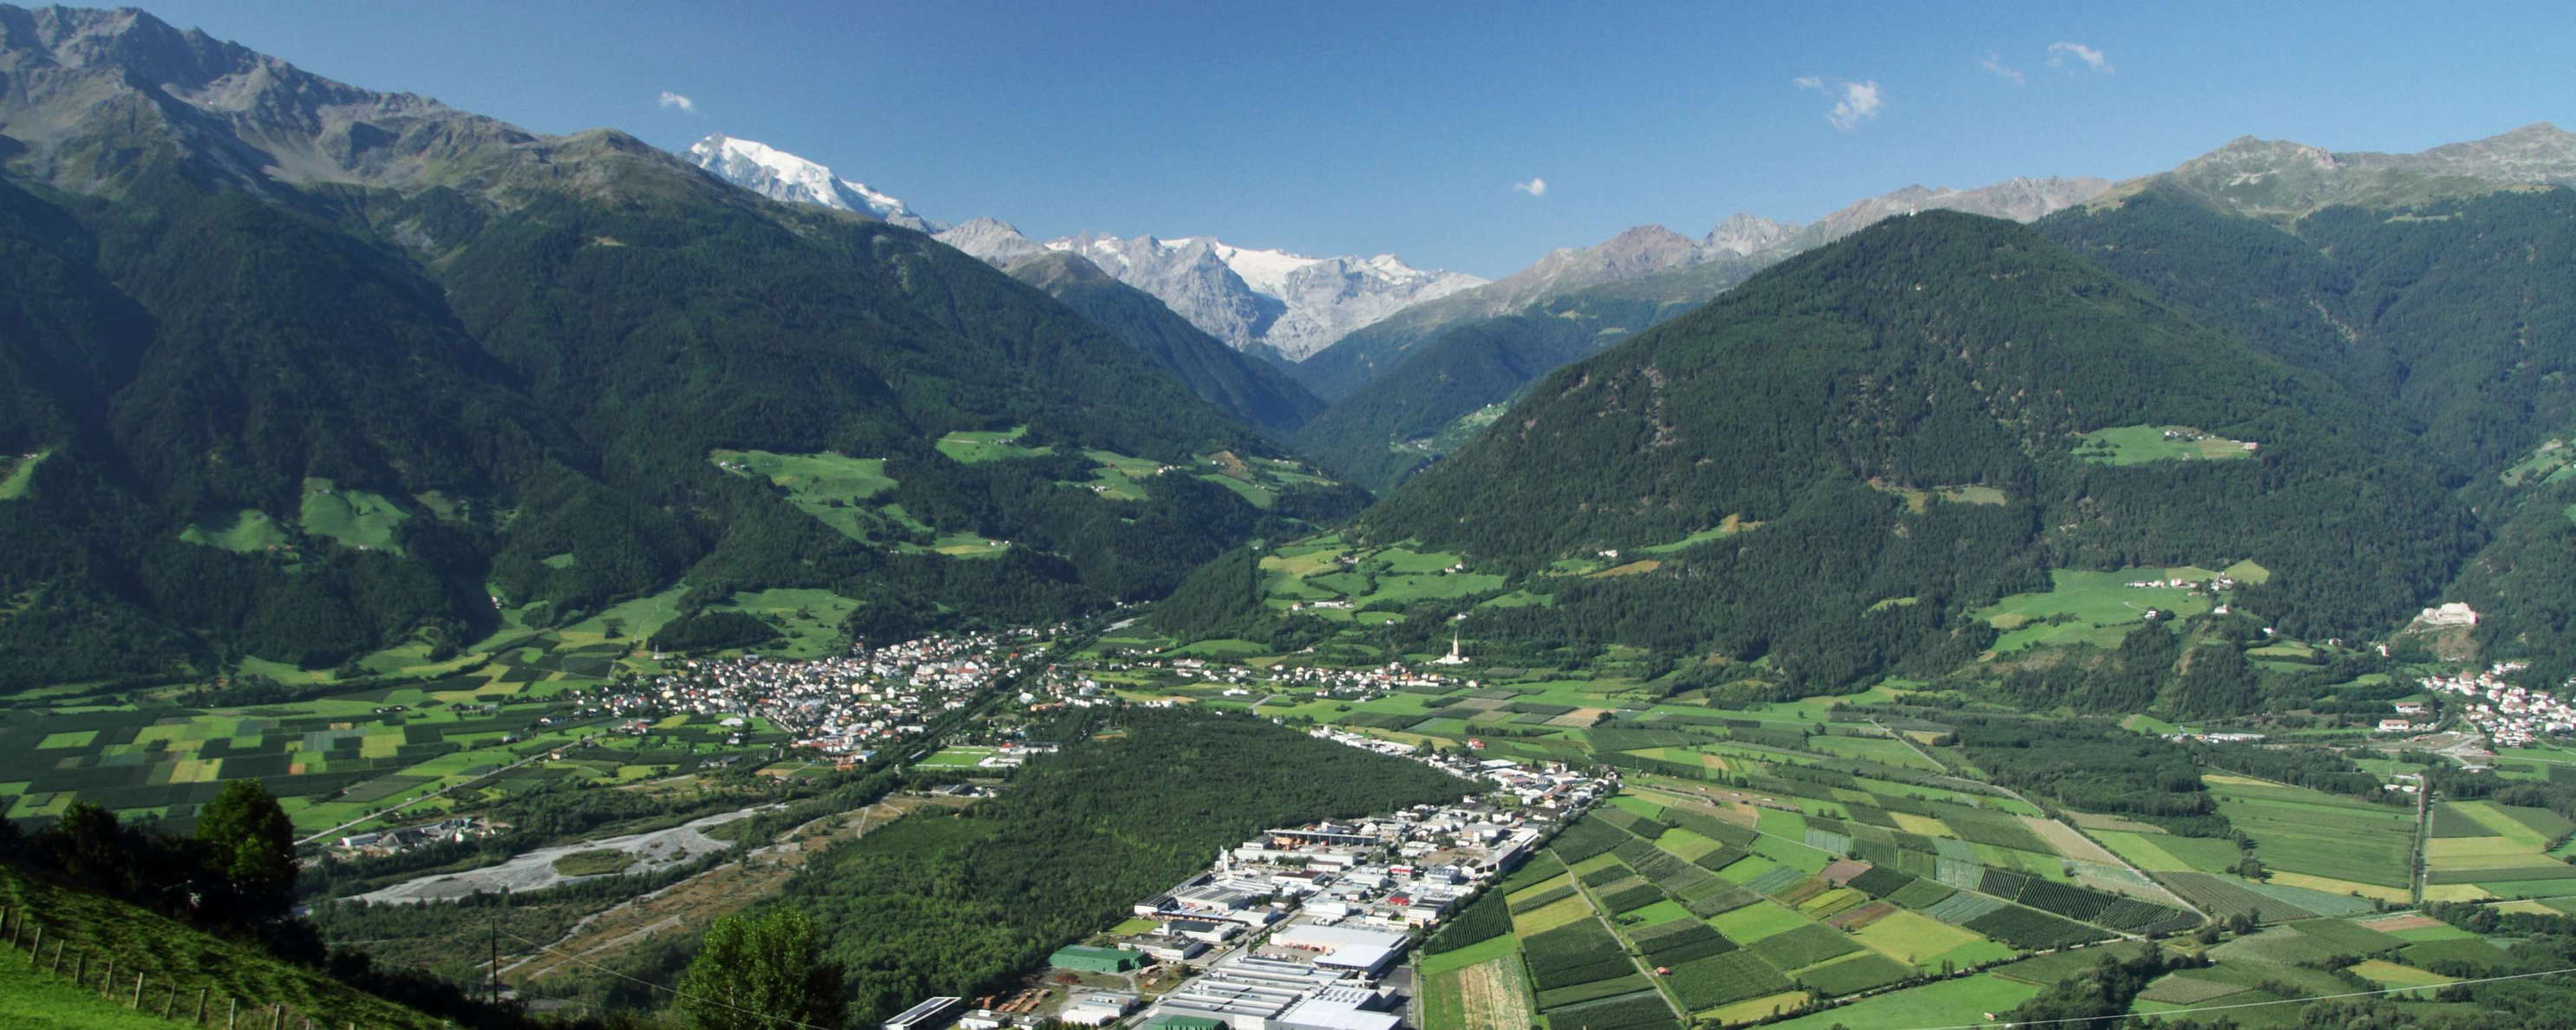 Vinschgau Valley | Prad and Ortler